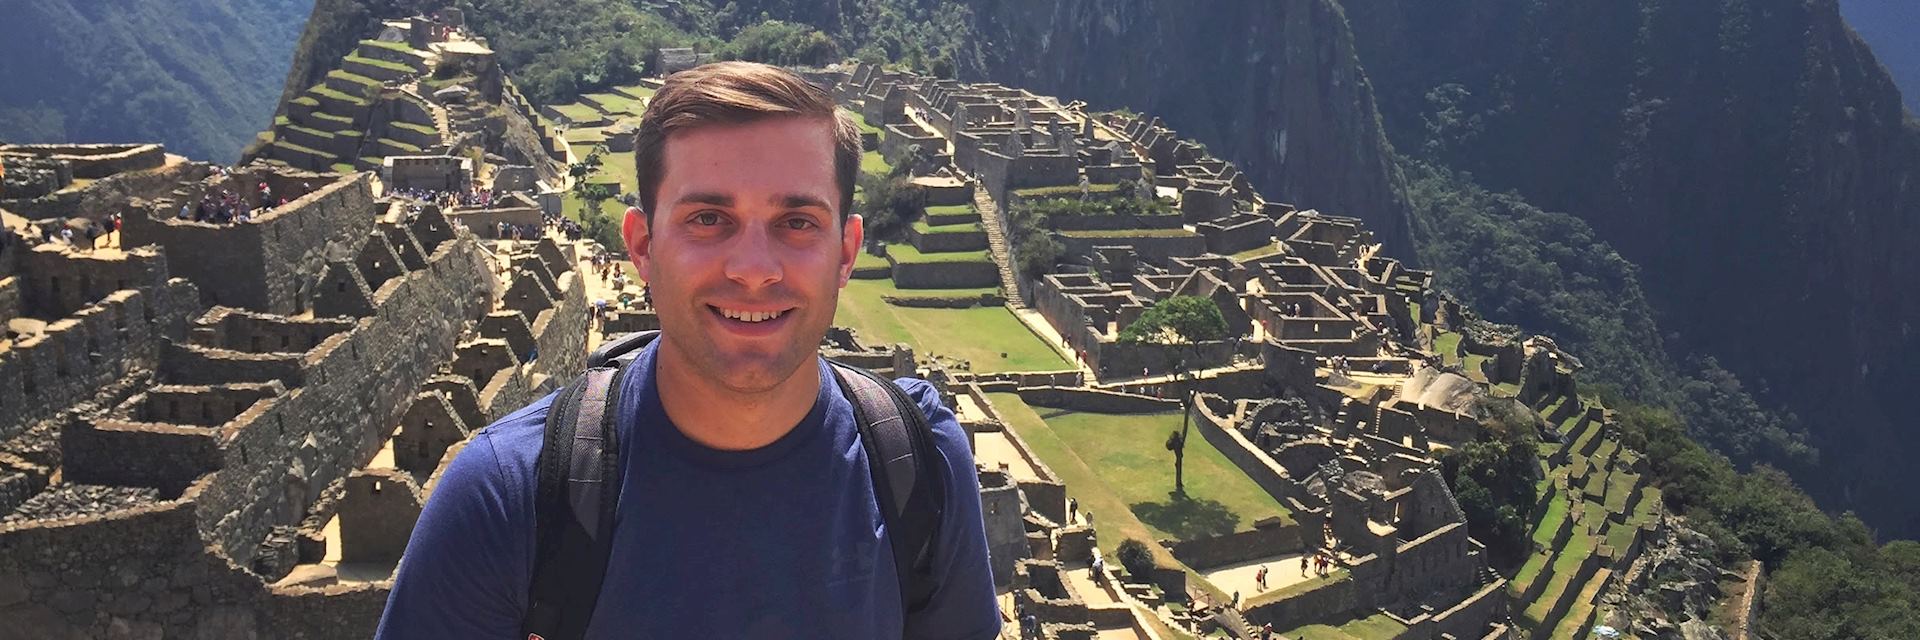 Ryan at Machu Picchu, Peru